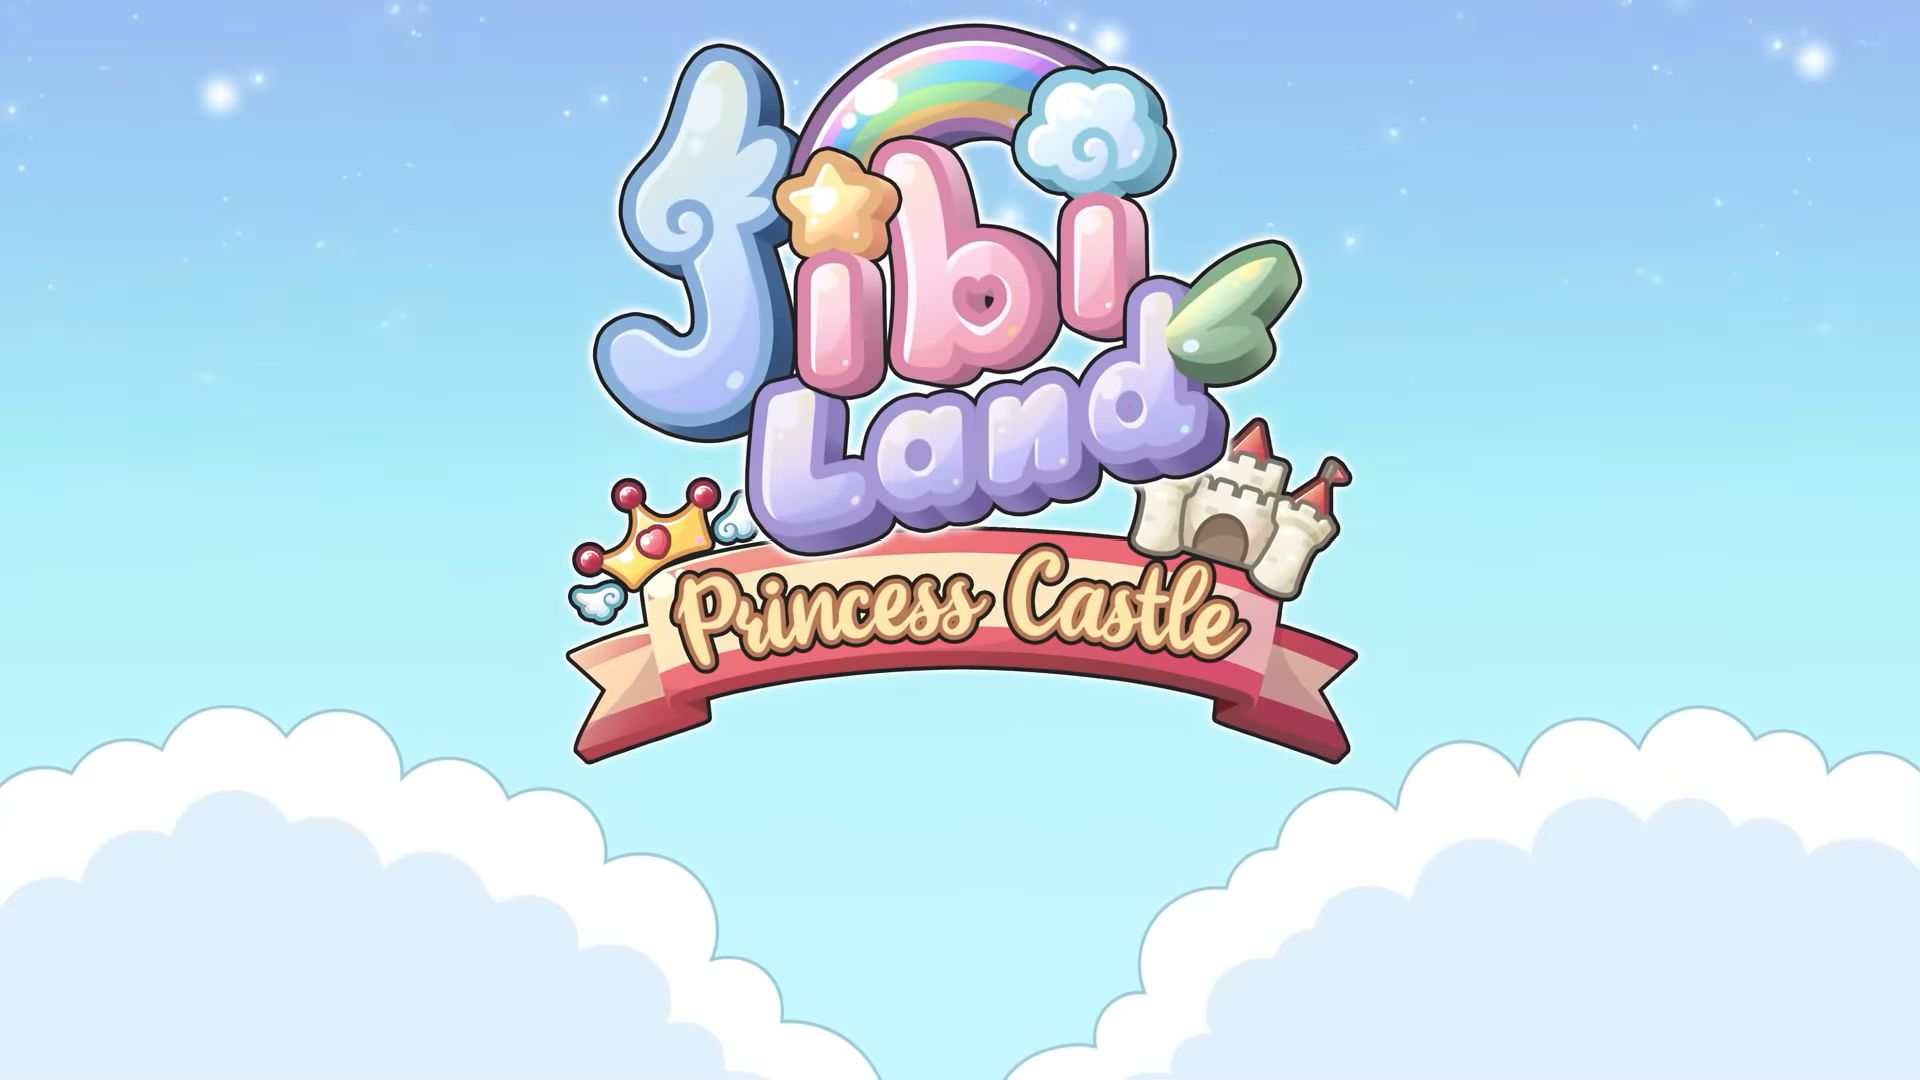 Jibi Land : Princess Castle скріншот 1